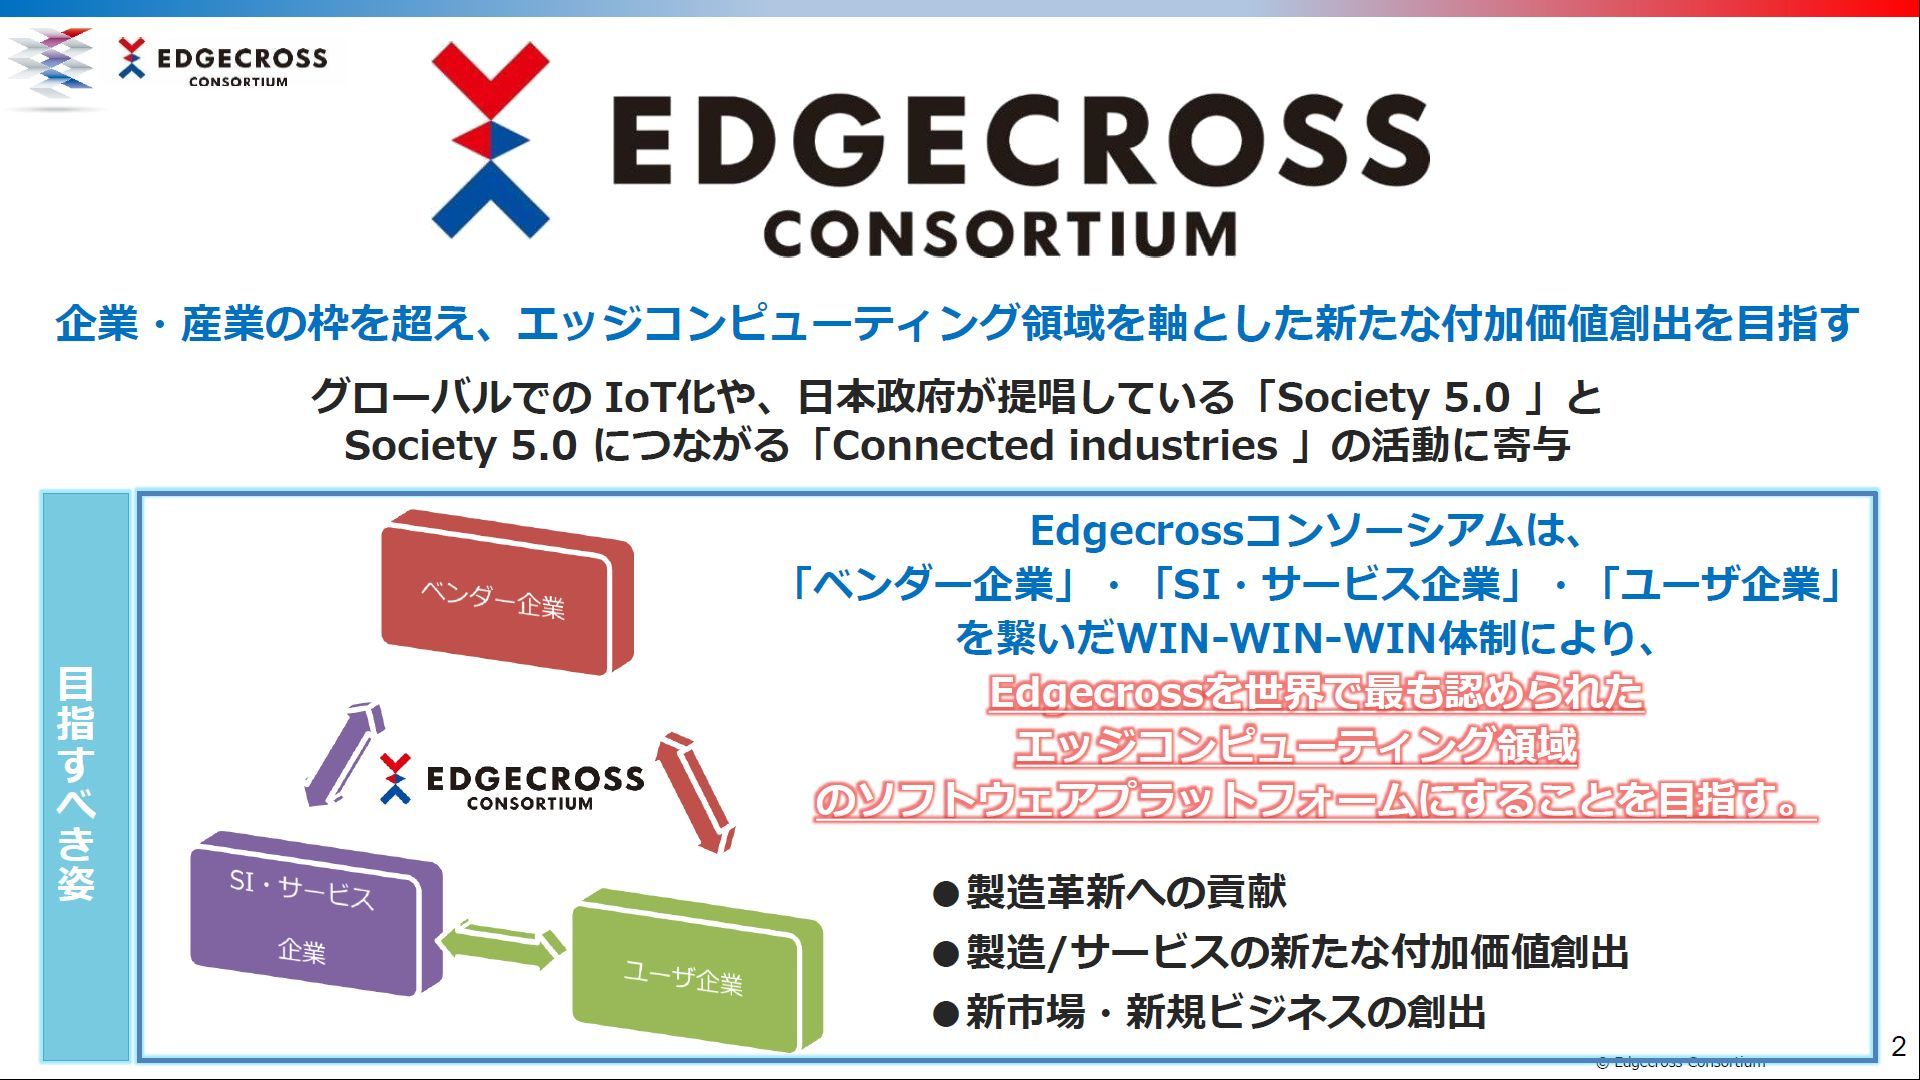 幹事企業にトレンドマイクロが参加予定、Edgecrossの2021年度活動方針